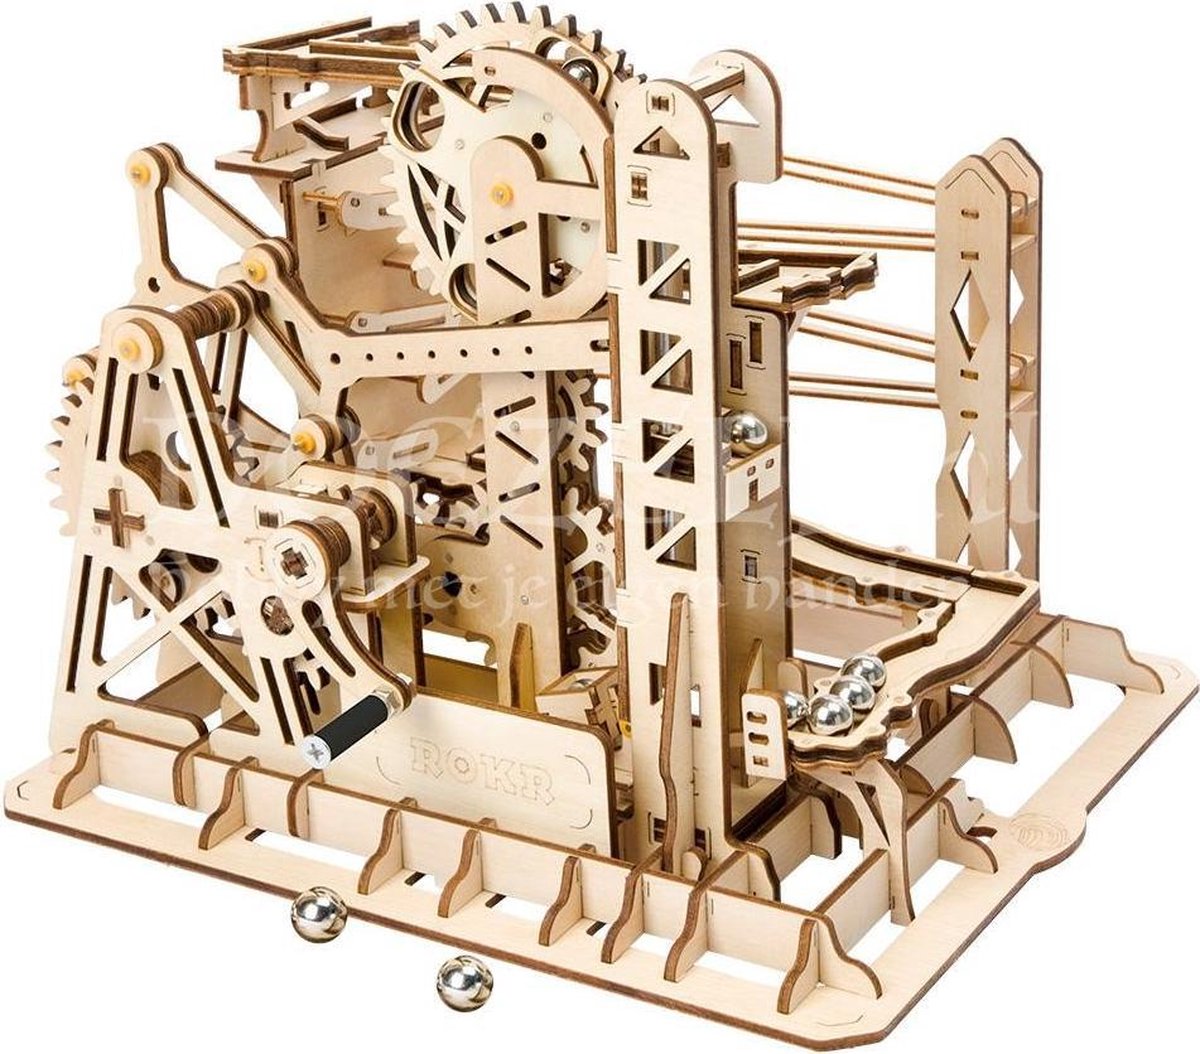 Robotime bouwset knikkerbaan Lift Coaster hout 224 delig - Bruin